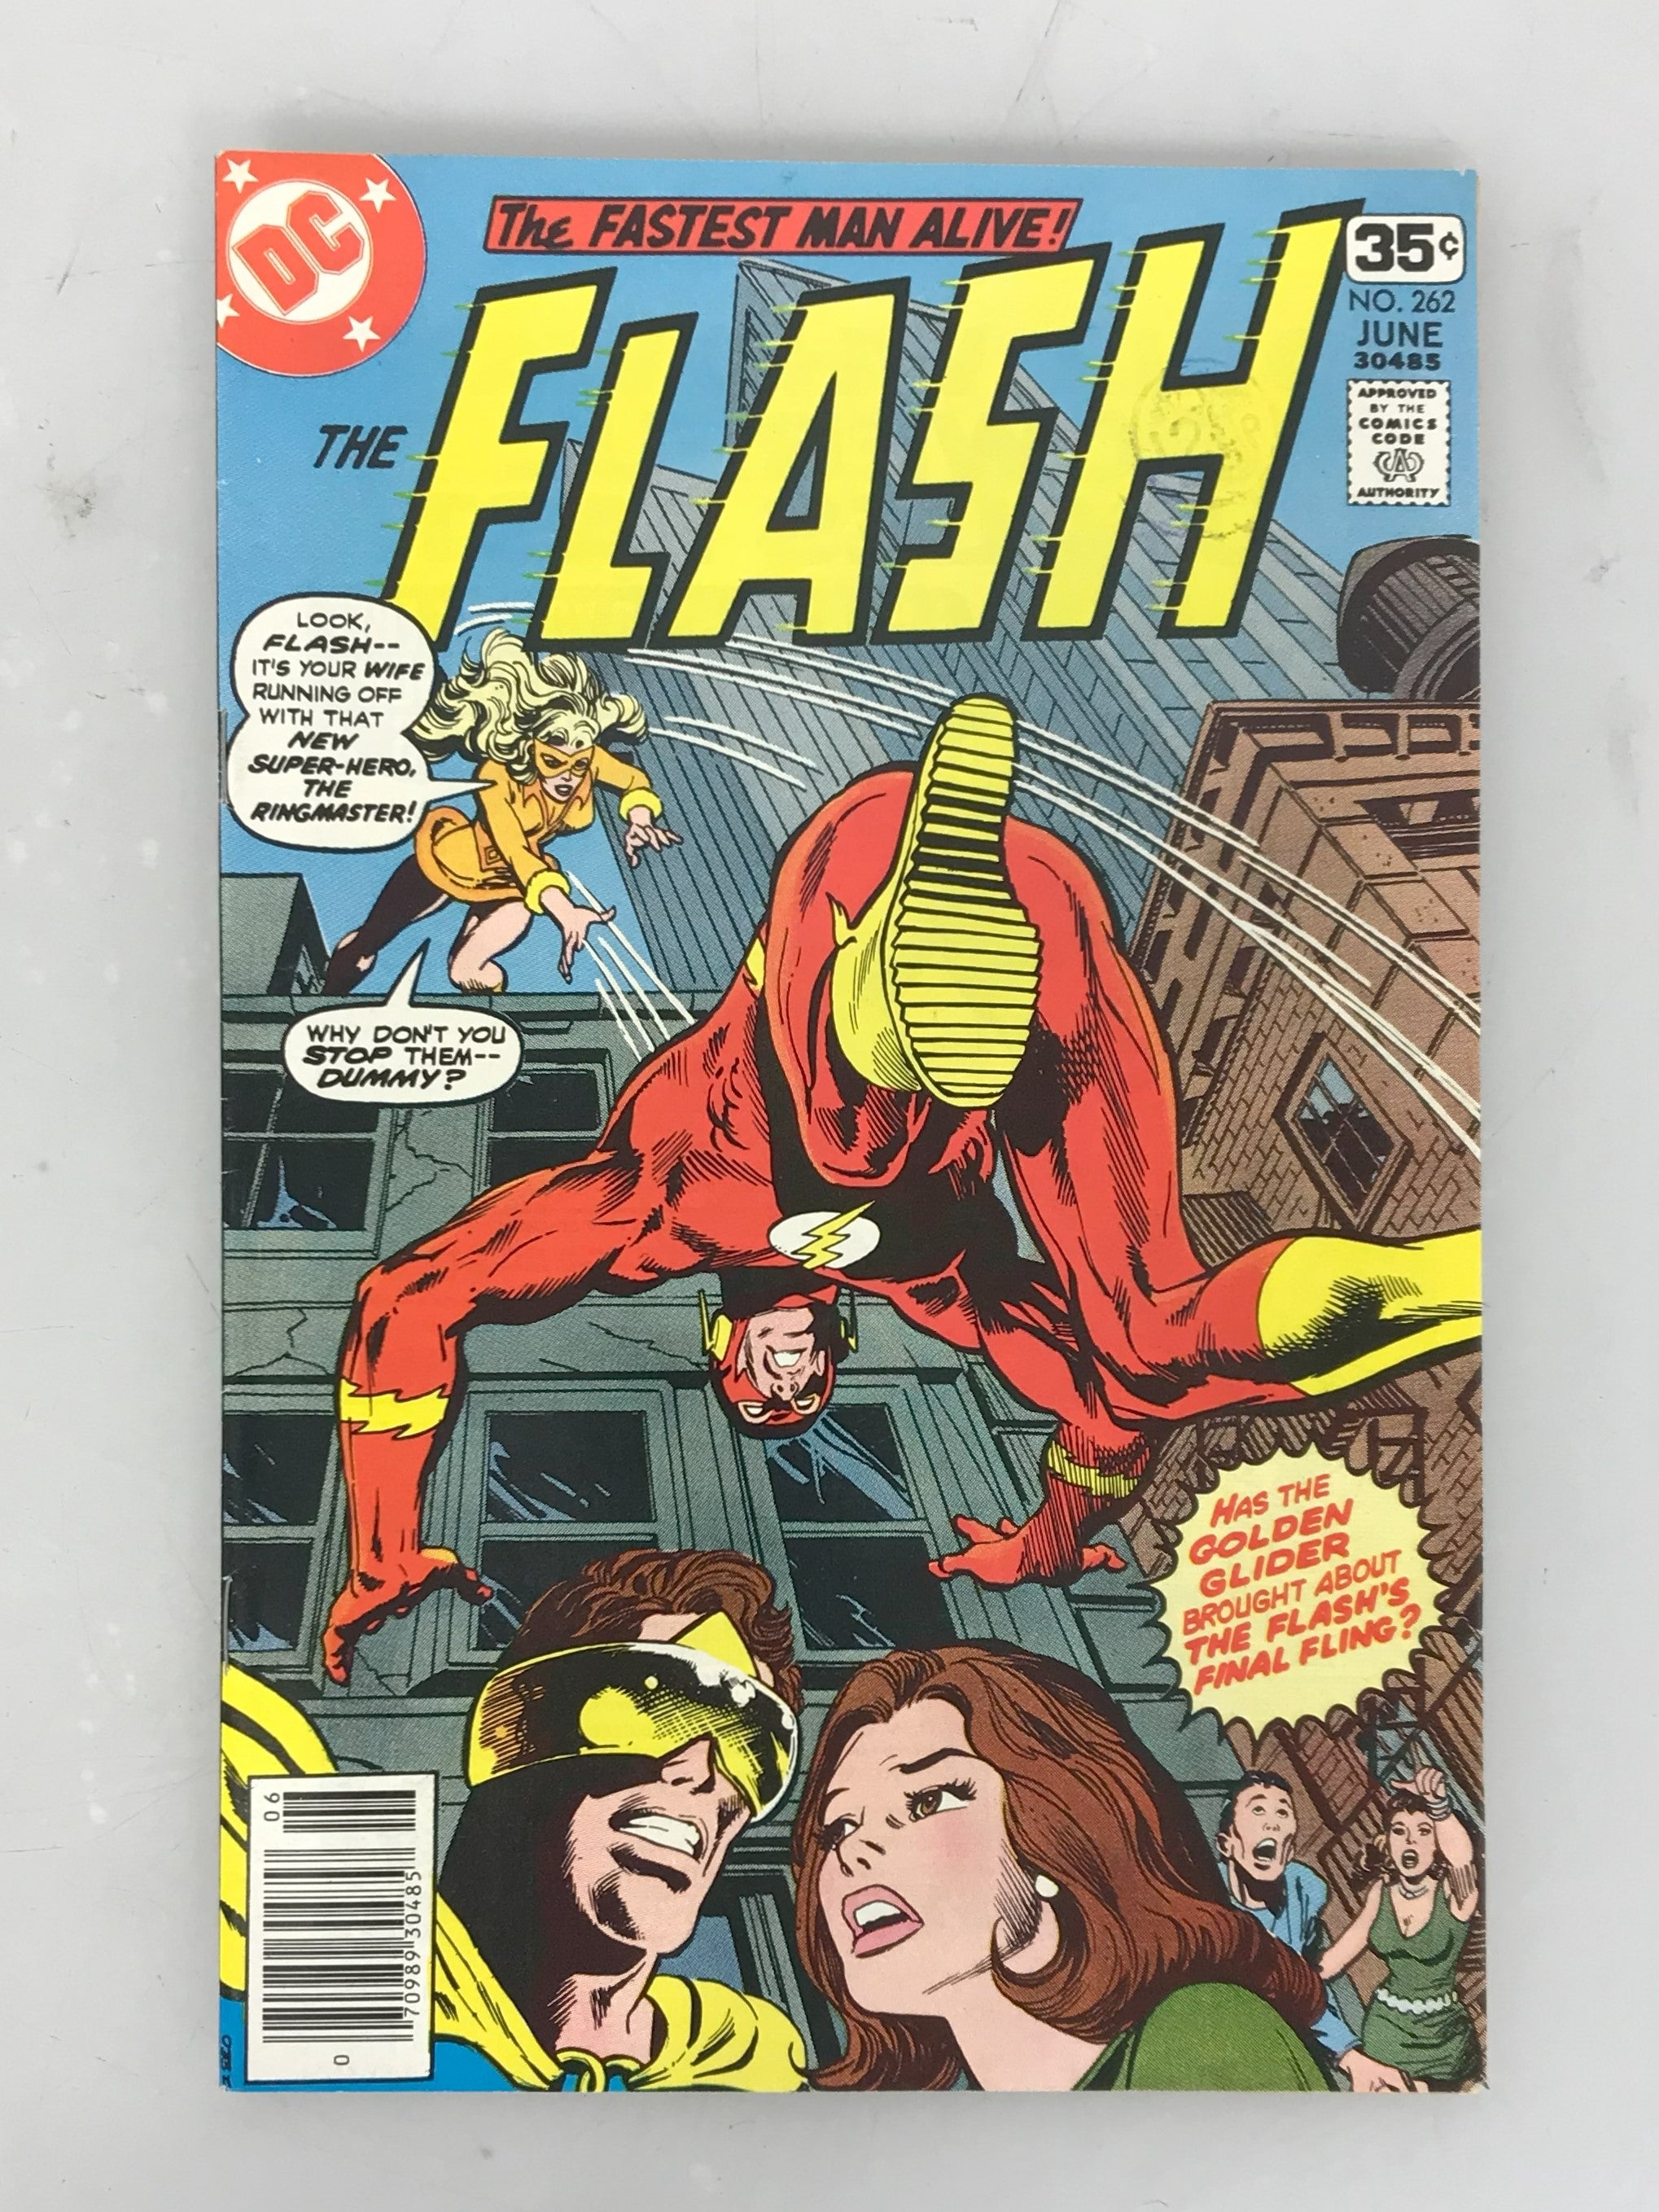 The Flash Vol. 30 No. 262 1978